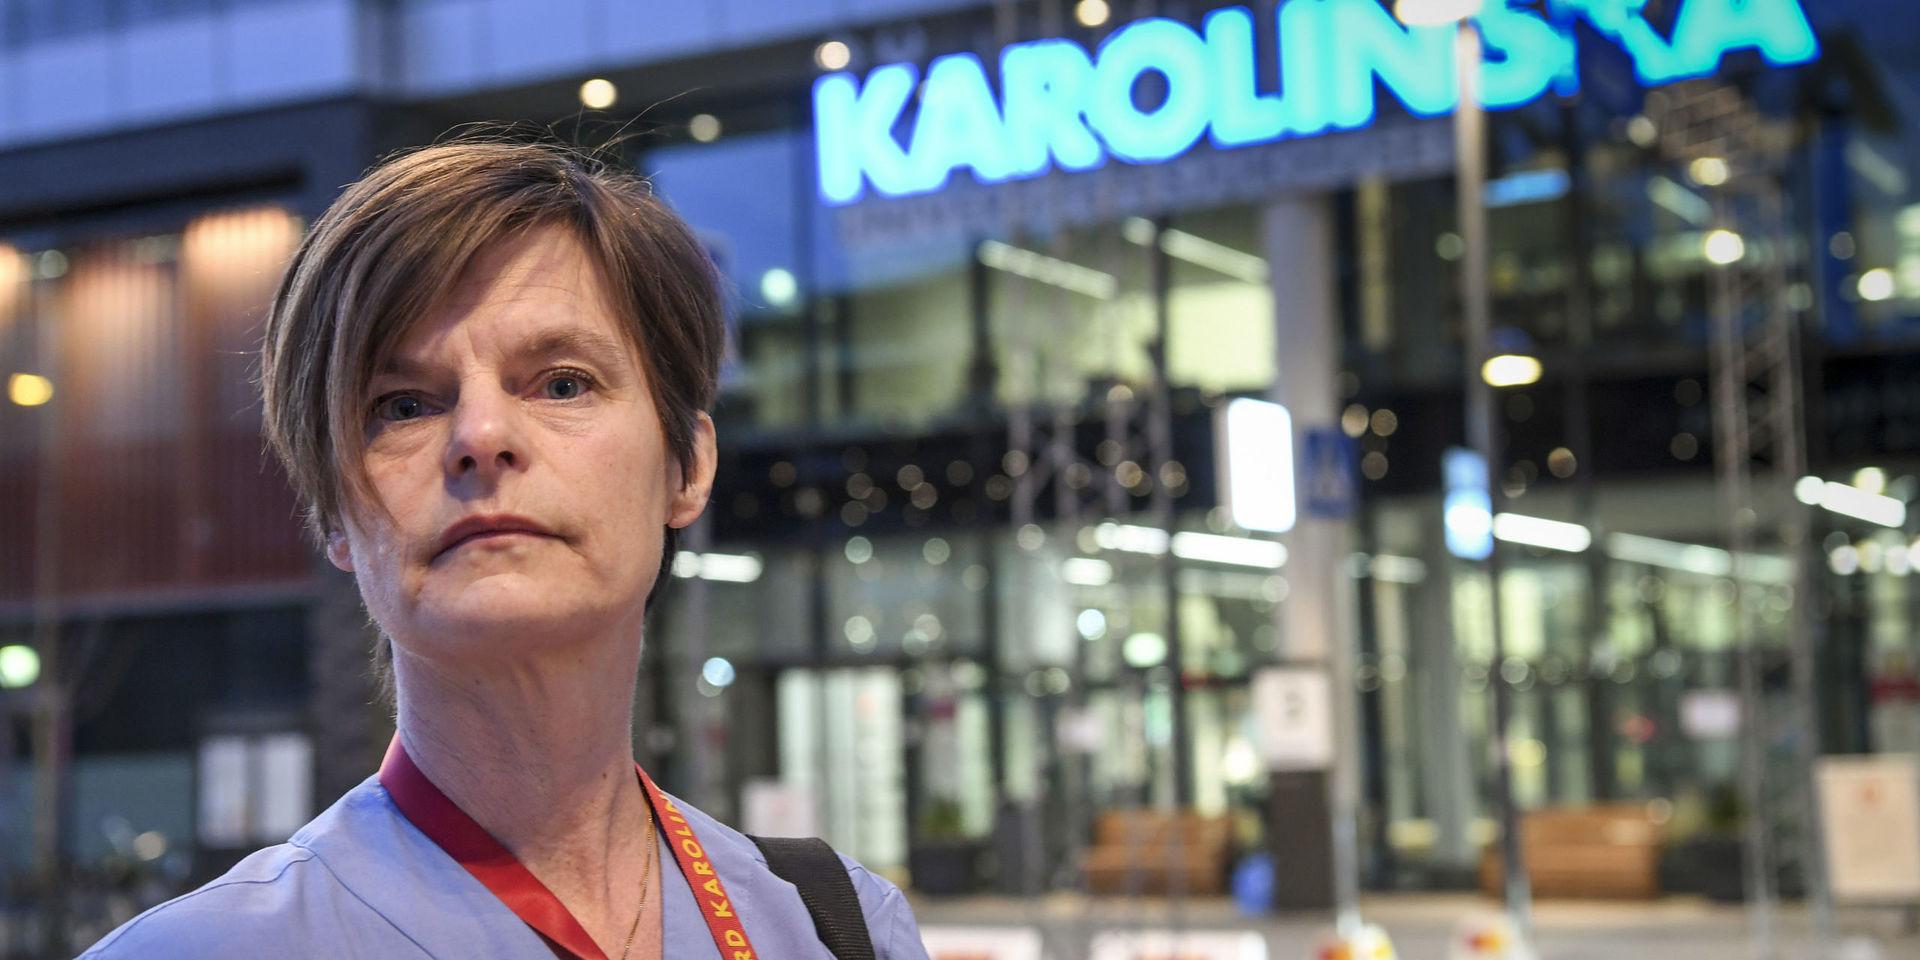 Coronautbrottet gör att trycket på de svenska sjukhusen ökar hela tiden, säger Anna Helmerson, intensivvårdssjuksköterska vid Karolinska universitetssjukhuset i Solna.